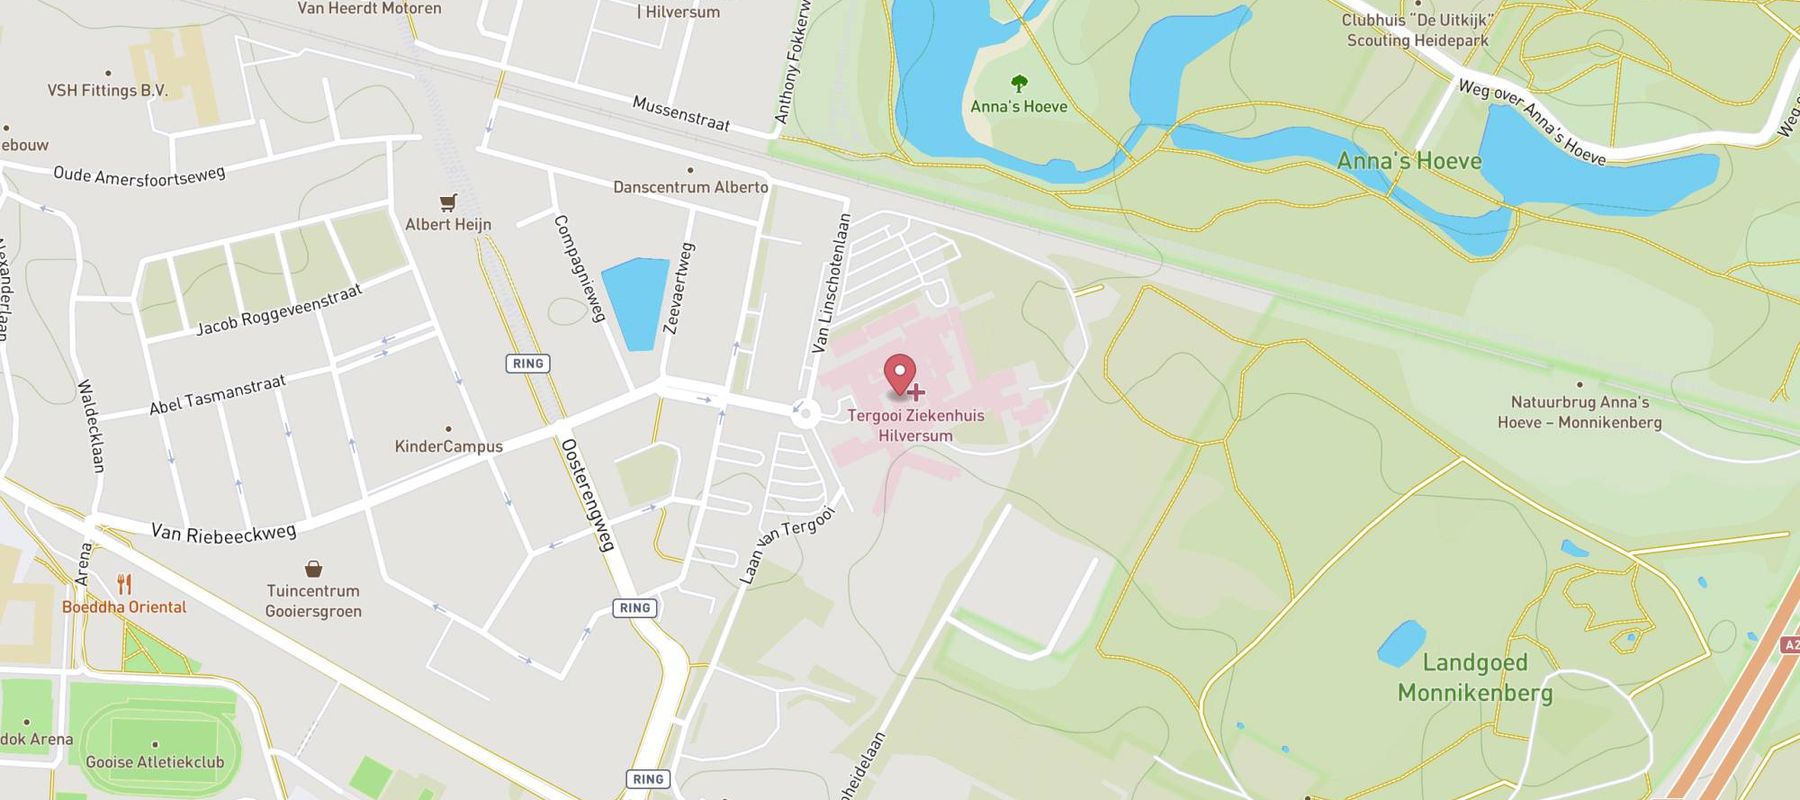 Tergooi Ziekenhuis - locatie Hilversum map